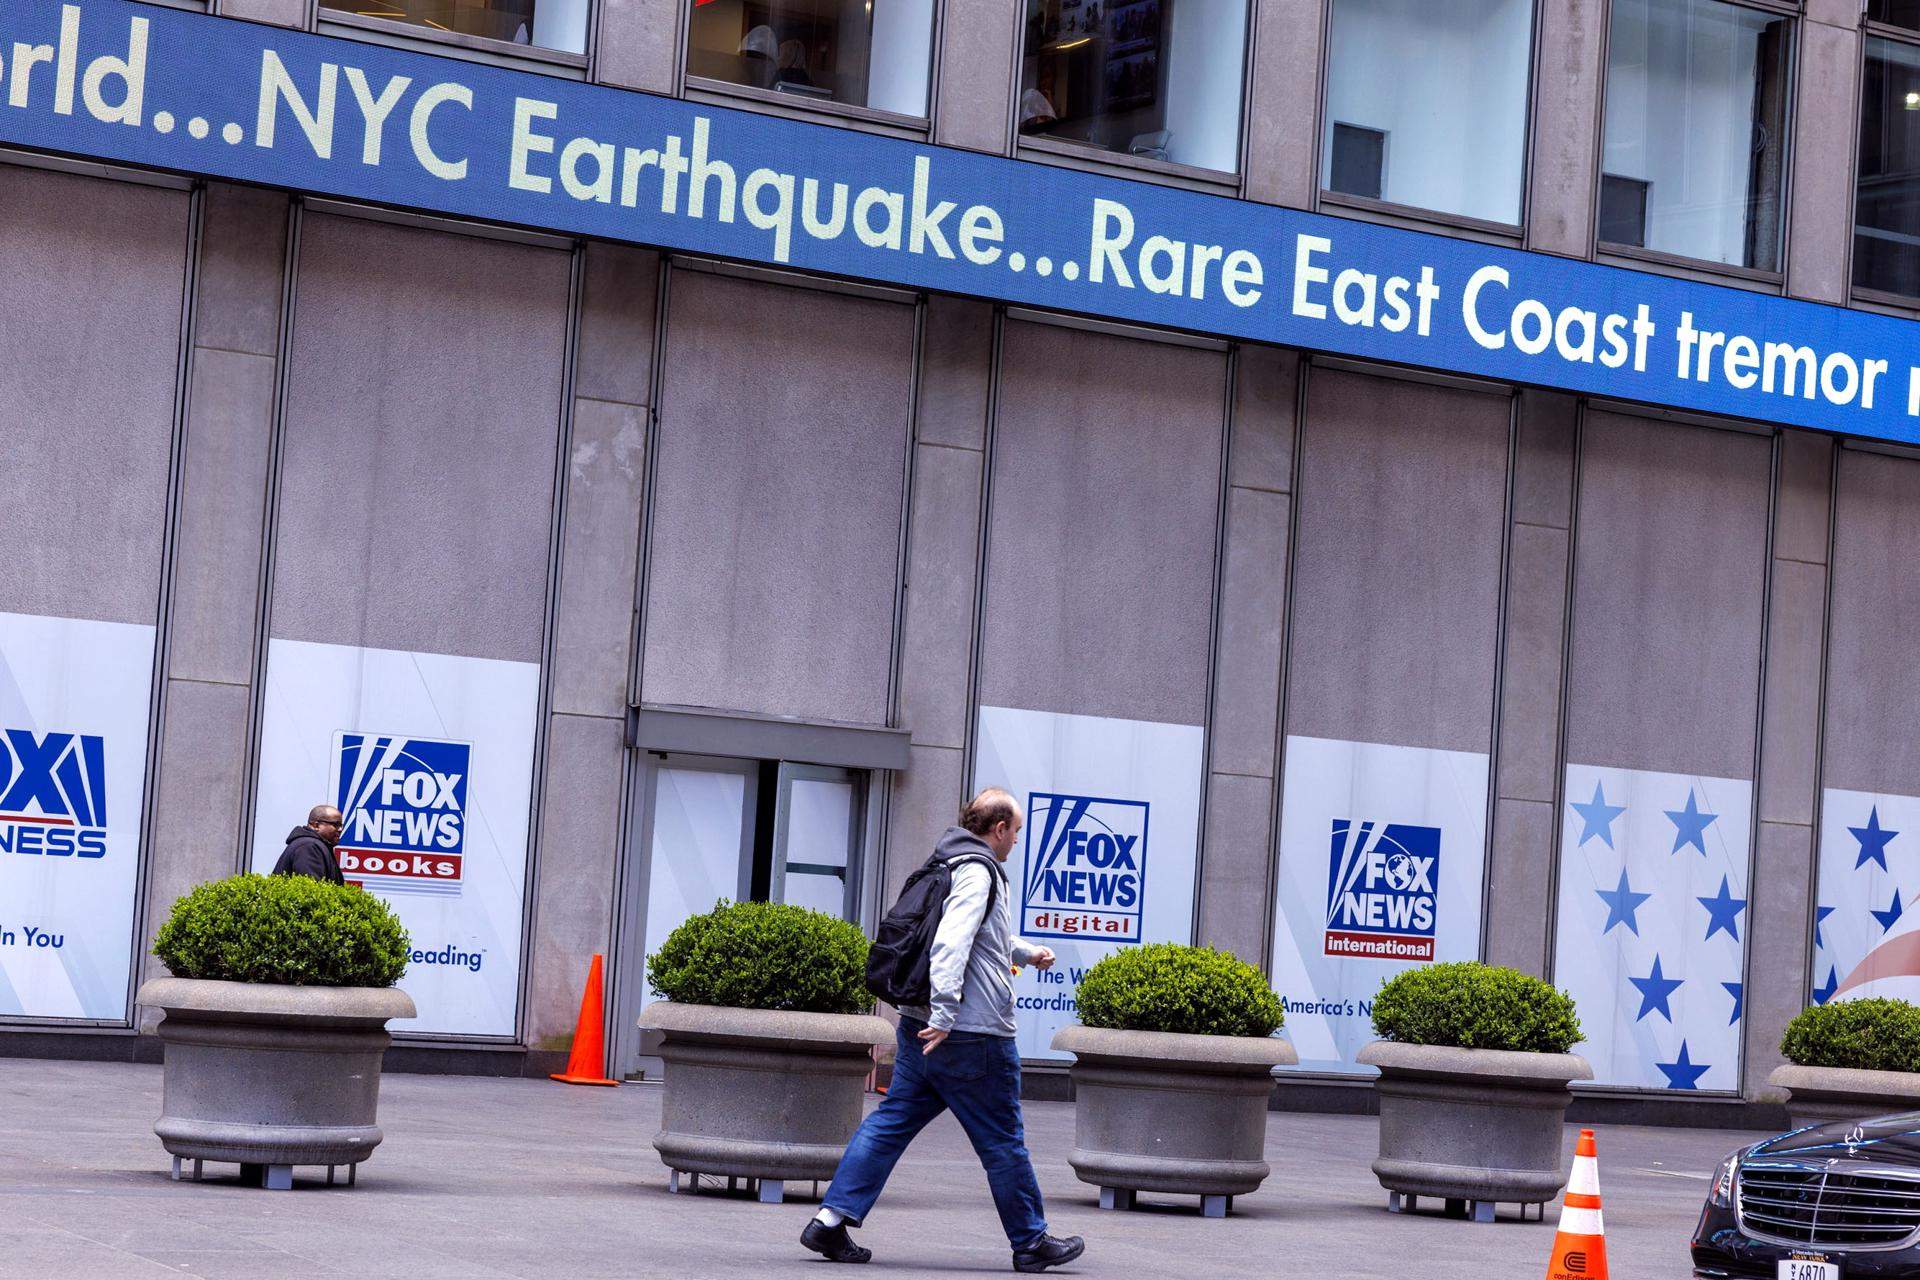 Així va viure una menorquina el terratrèmol a Nova York: "Ha estat bastant fort!"